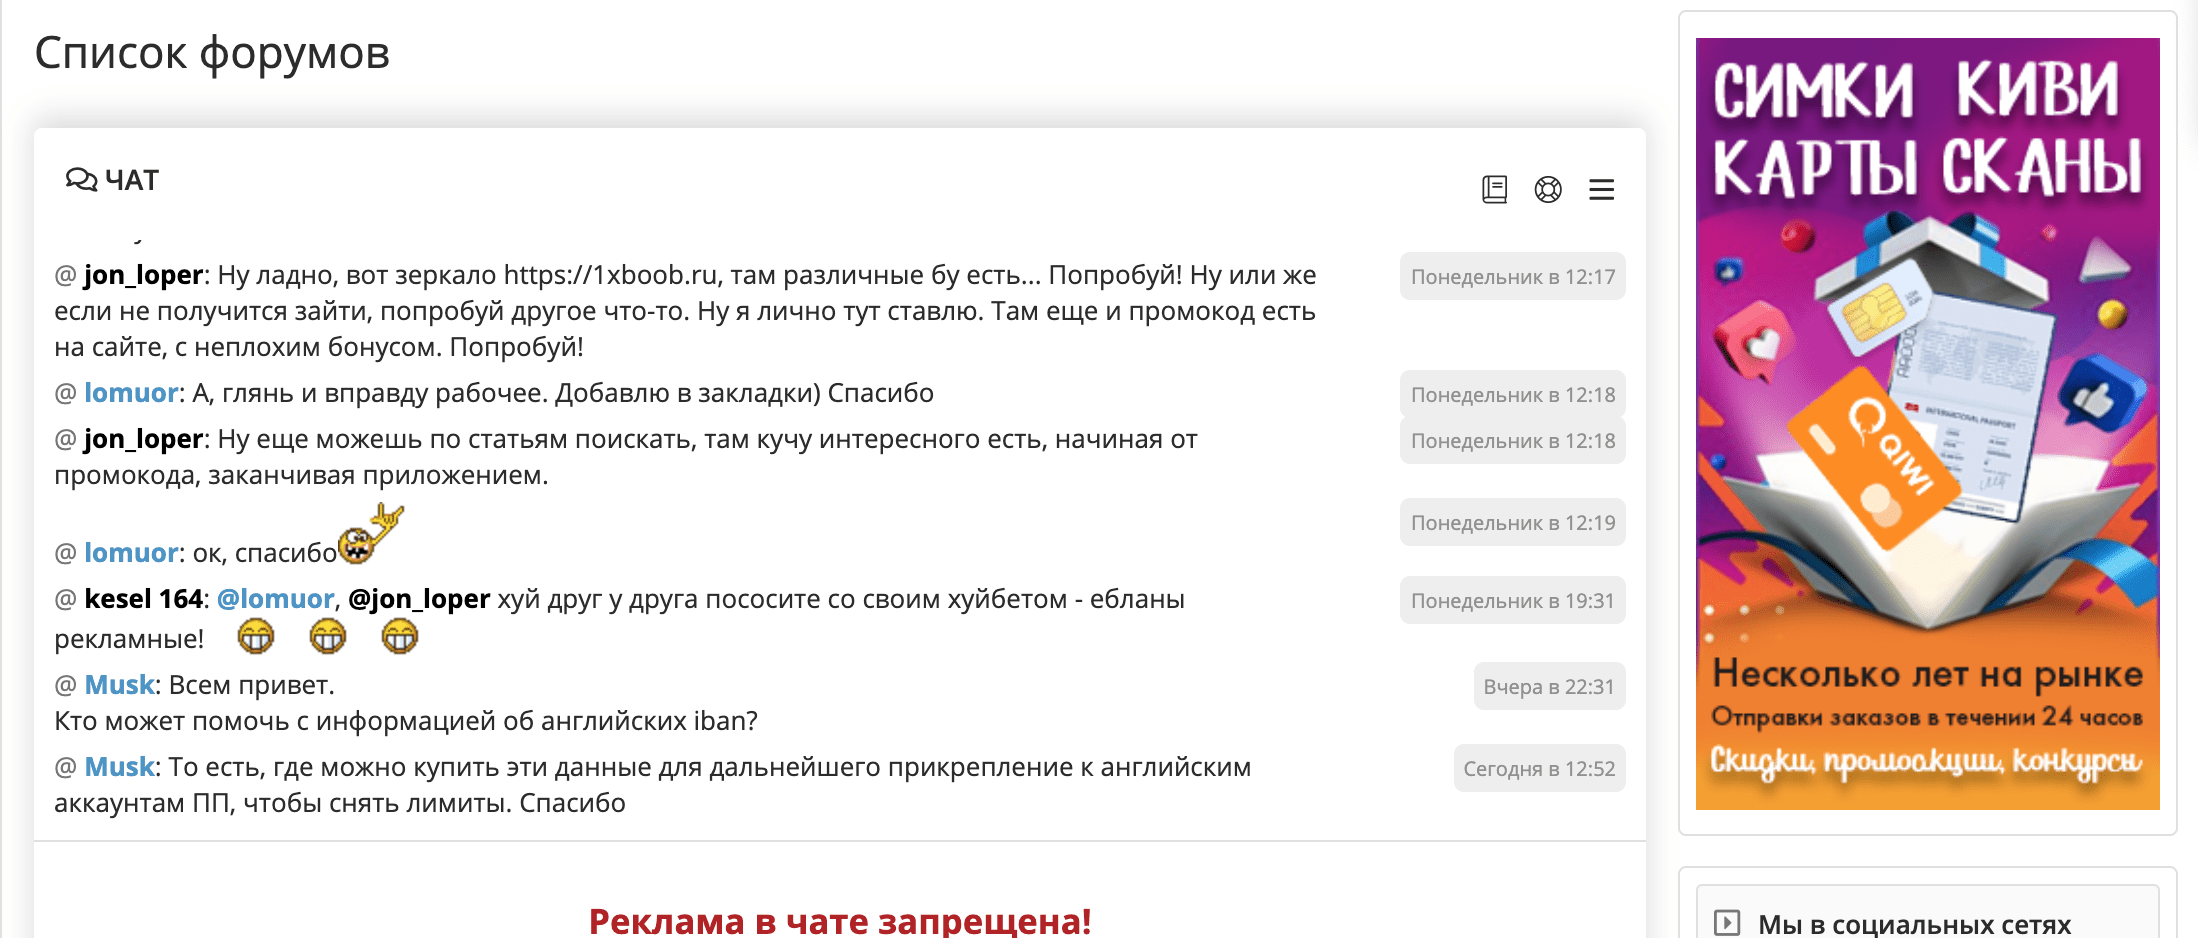 Форумы на сайте Кит-Каппер.ру(Kit-capper.cc)